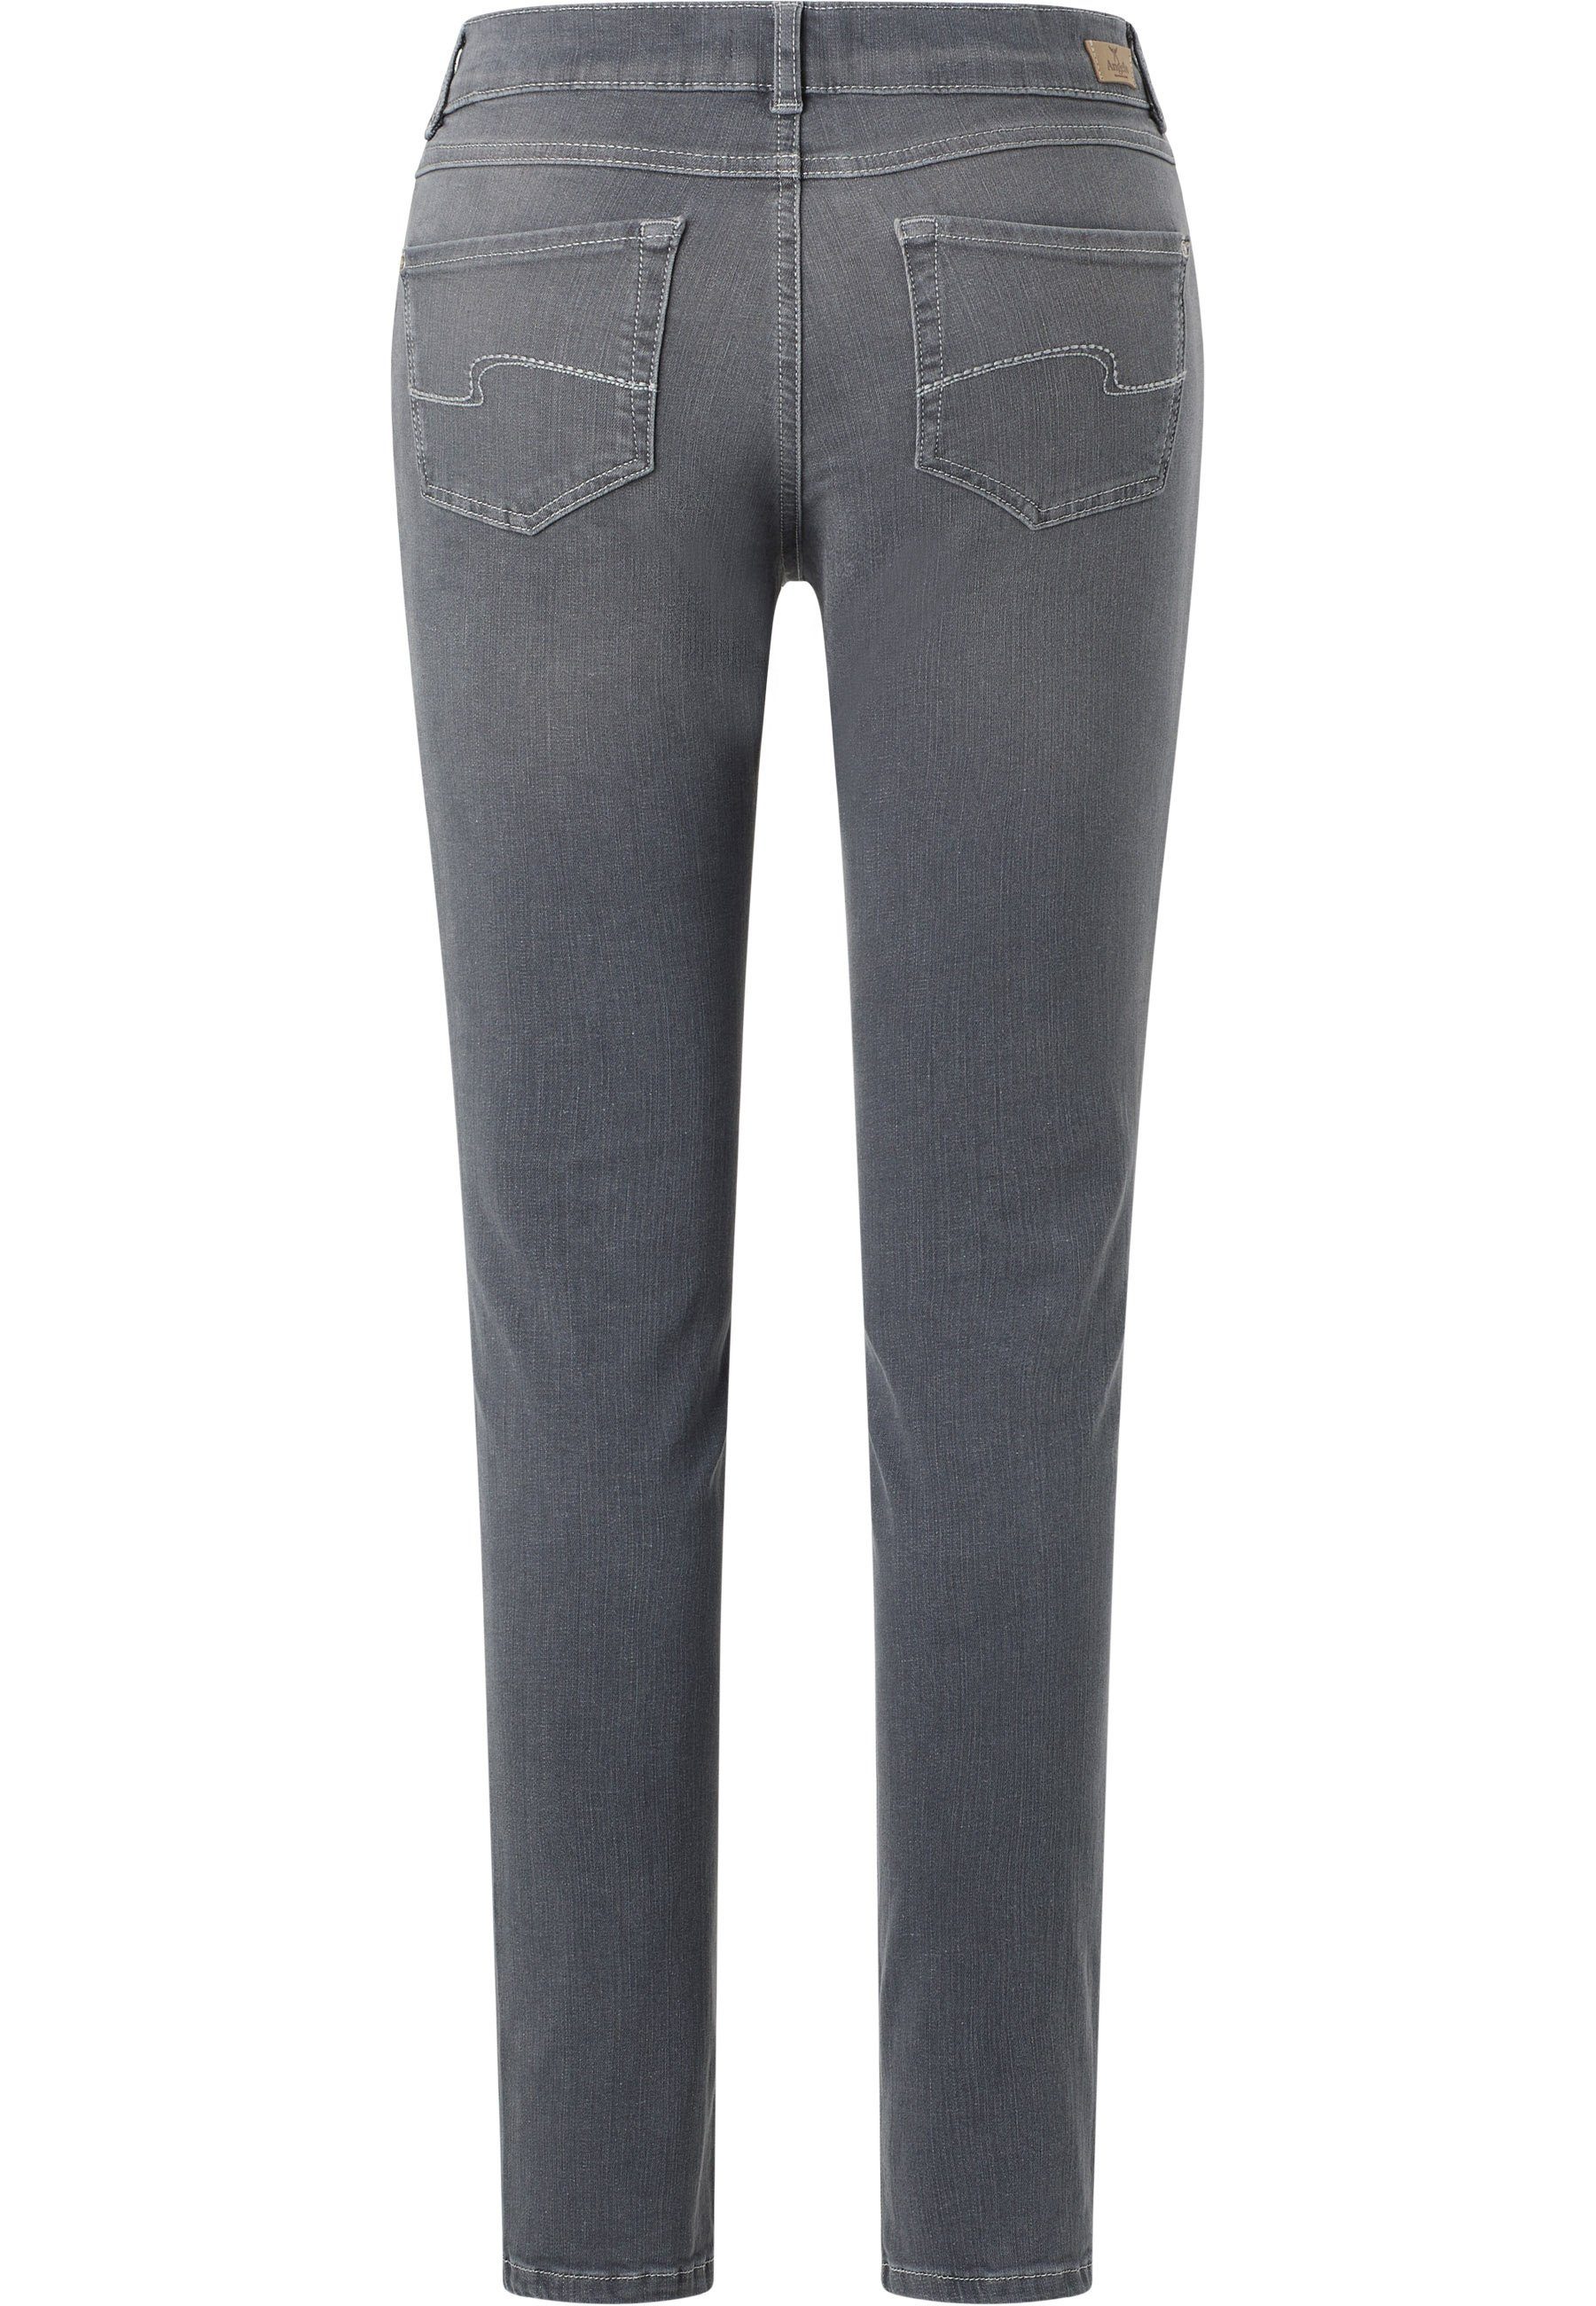 authentischem Denim mit ANGELS mit grau Slim-fit-Jeans Jeans Skinny Label-Applikationen